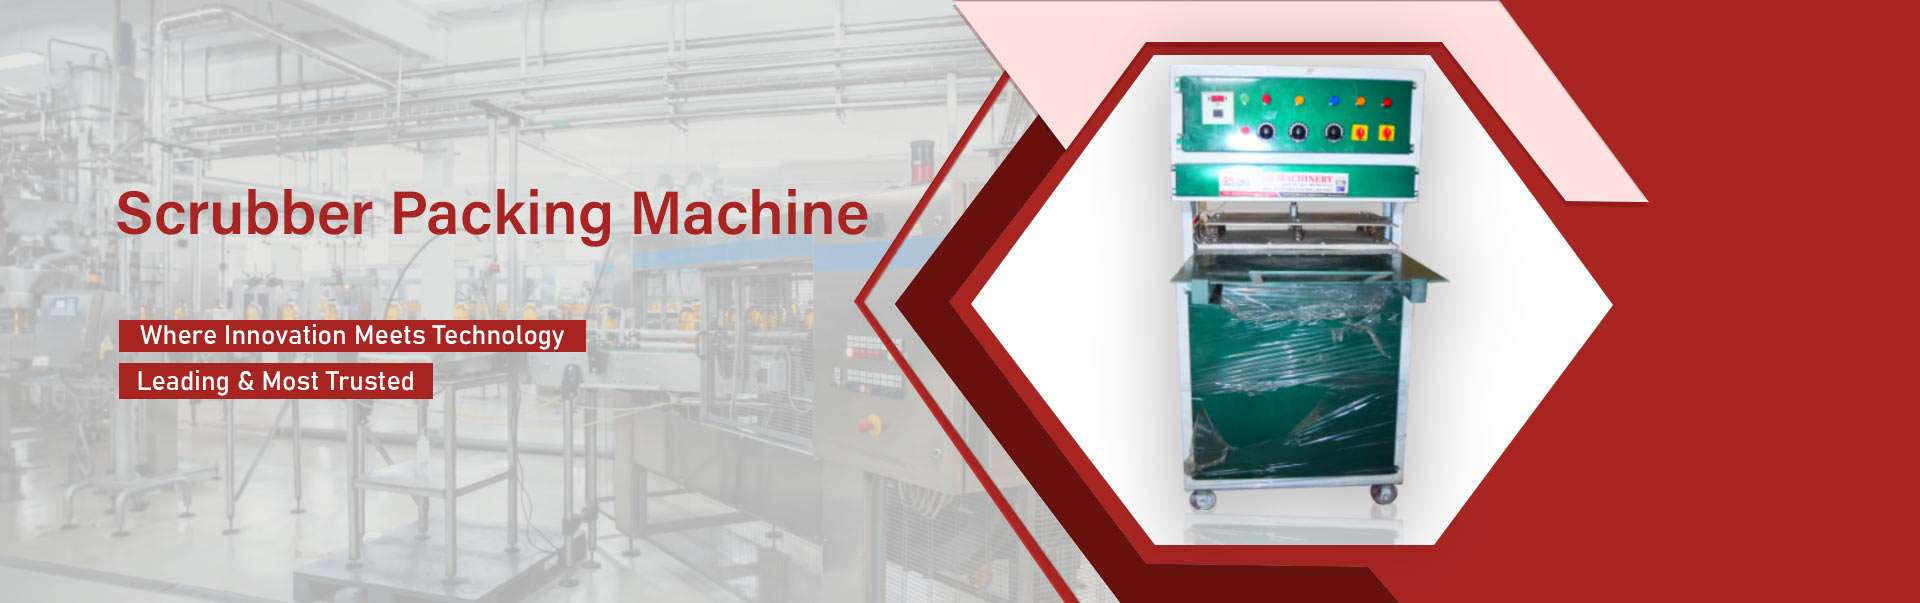  Scrubber Packing Machine Manufacturers Manufacturers in Amaravati